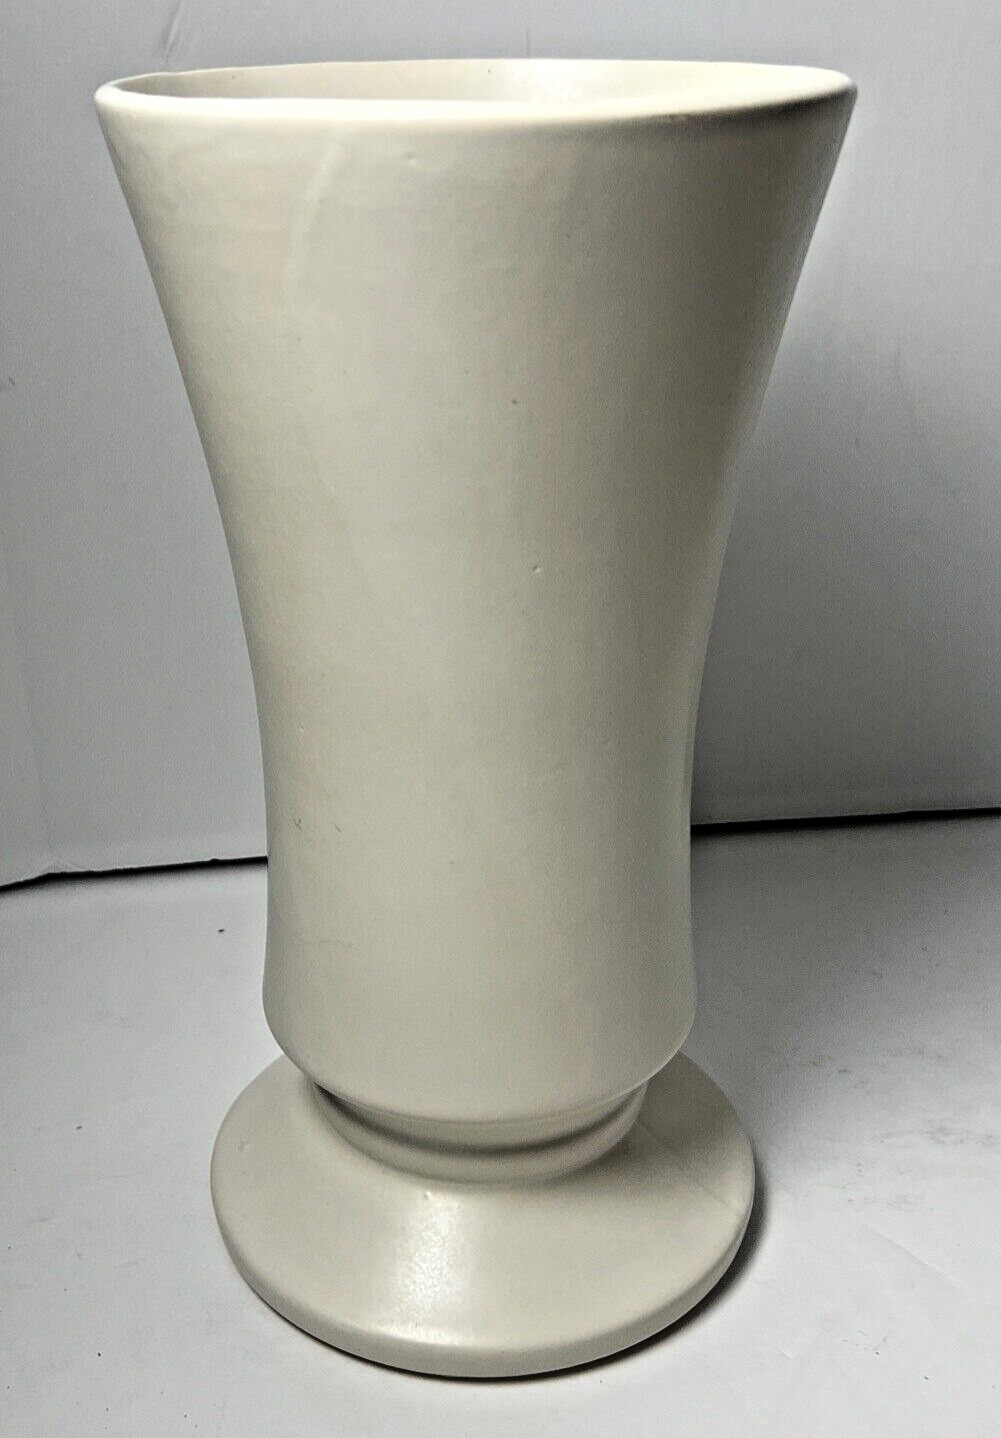 Vintage McCoy Floraline White Pedestal Vase 482 Pottery 11.5” USA Made